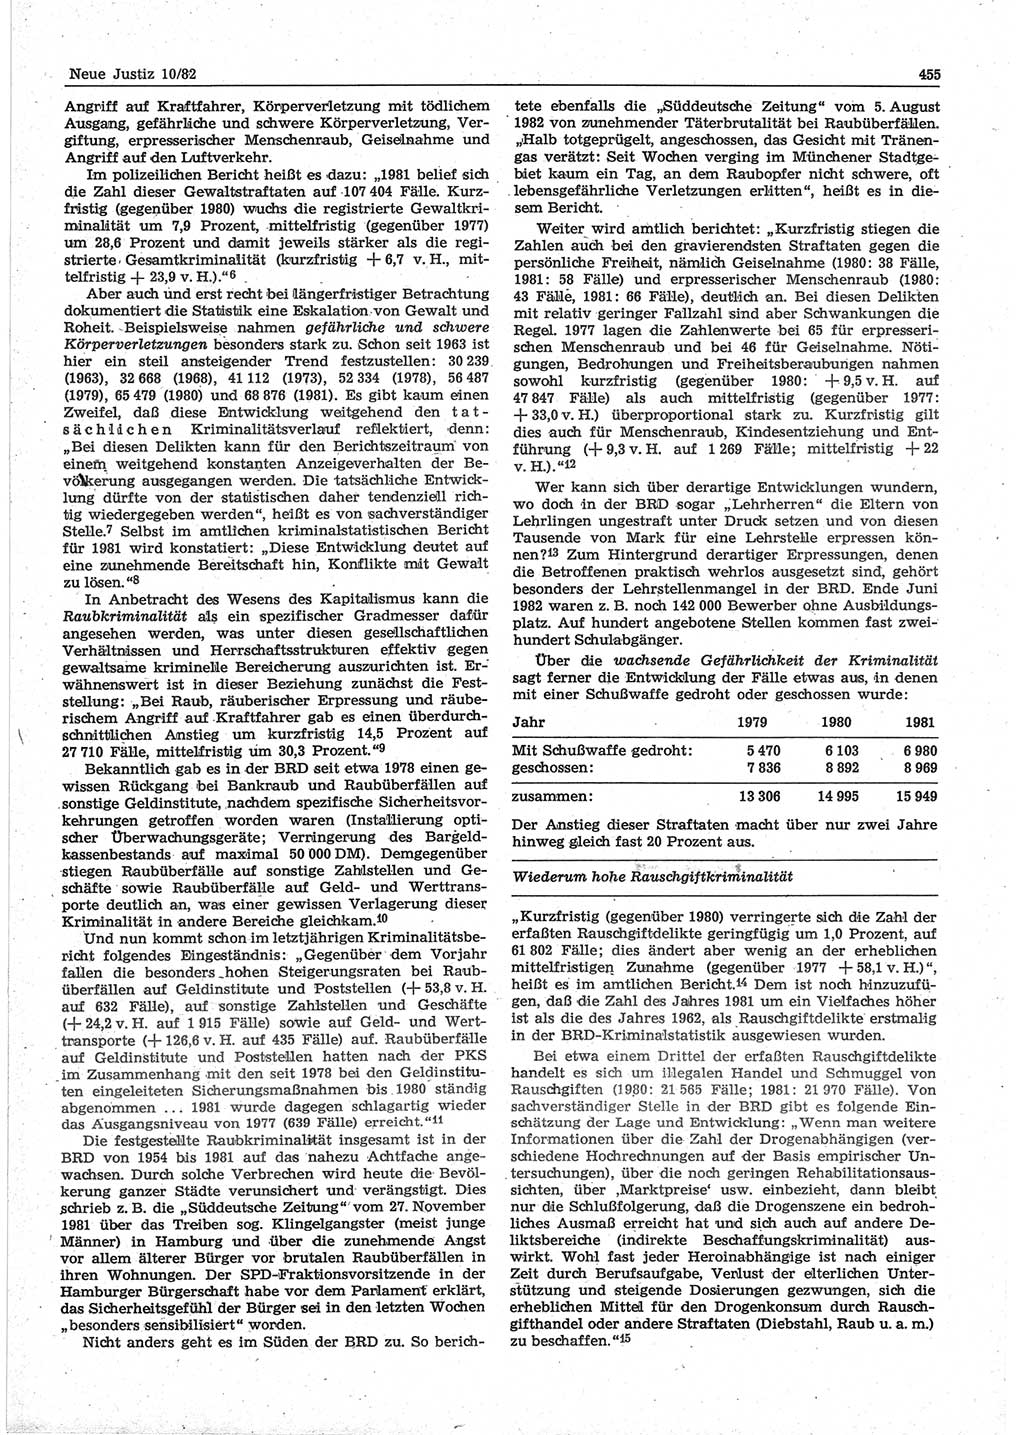 Neue Justiz (NJ), Zeitschrift für sozialistisches Recht und Gesetzlichkeit [Deutsche Demokratische Republik (DDR)], 36. Jahrgang 1982, Seite 455 (NJ DDR 1982, S. 455)